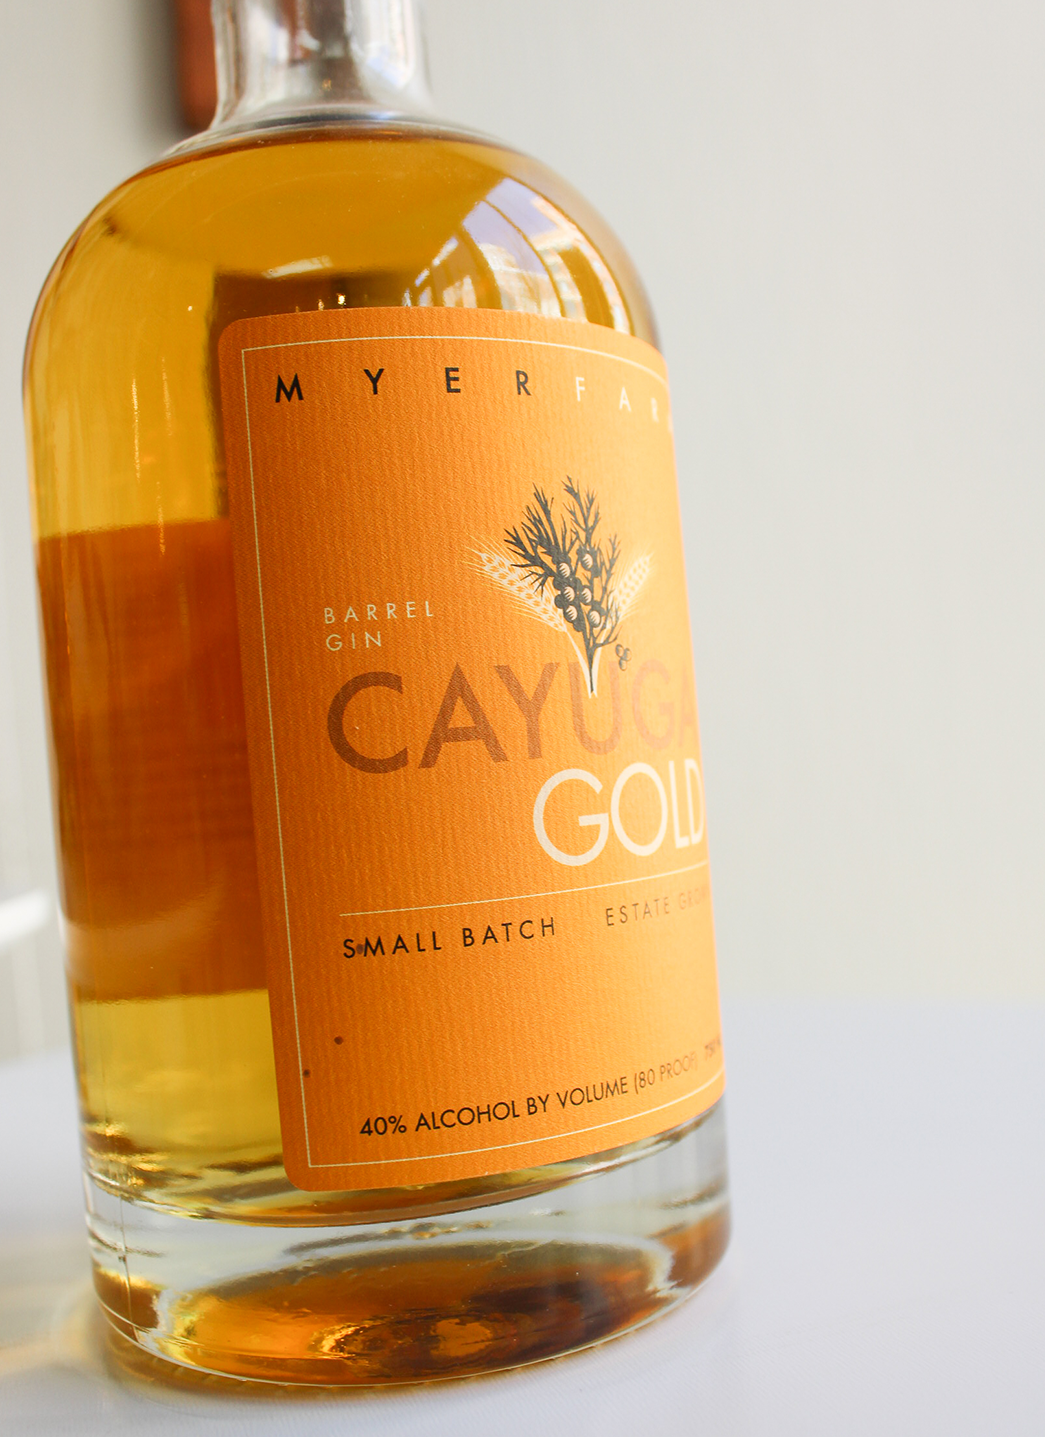 Myer Farm Cayuga Gold Gin